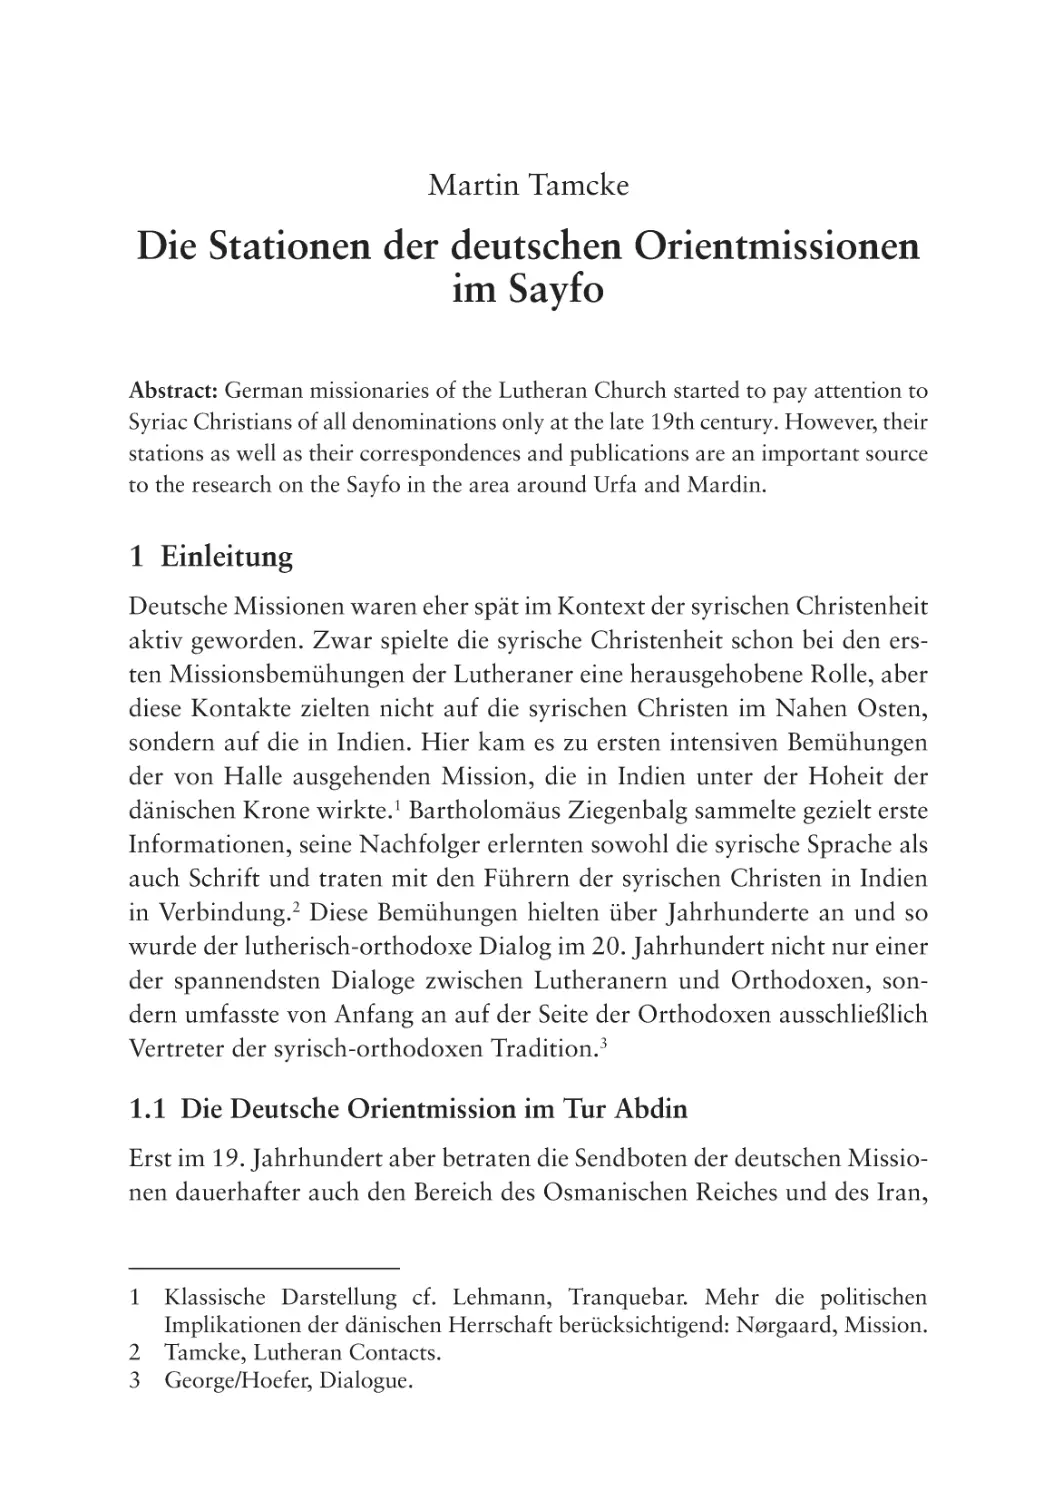 Die Stationen der deutschen Orientmissionen im Sayfo
1 Einleitung
1.1 Die Deutsche Orientmission im Tur Abdin